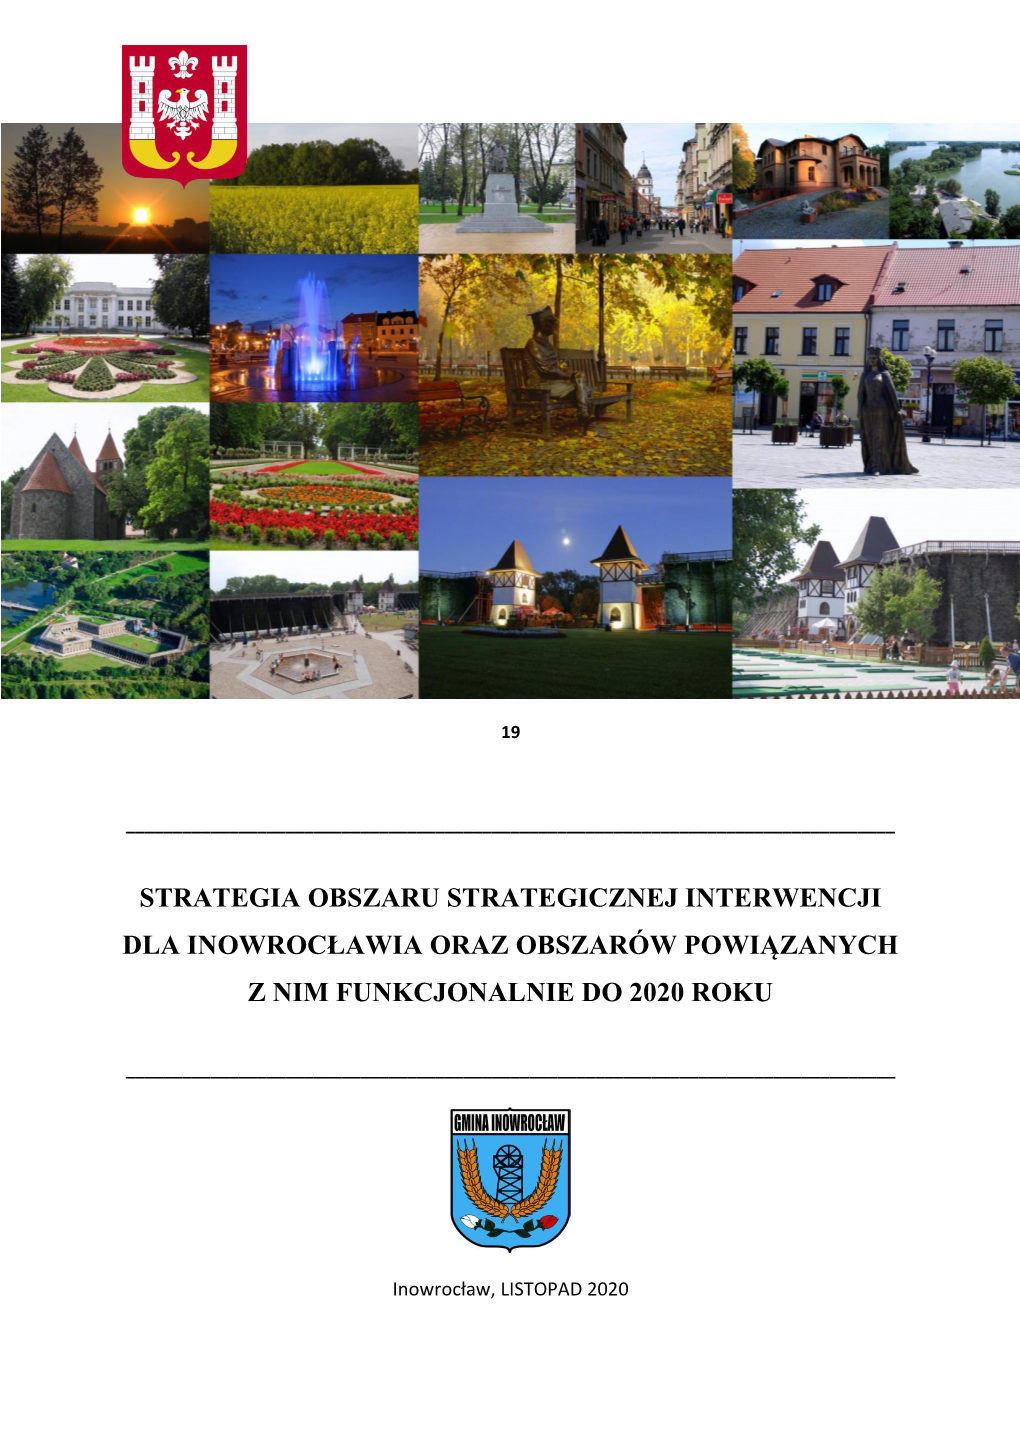 Strategia Obszaru Strategicznej Interwencji Dla Inowrocławia Oraz Obszarów Powiązanych Z Nim Funkcjonalnie Do 2020 Roku